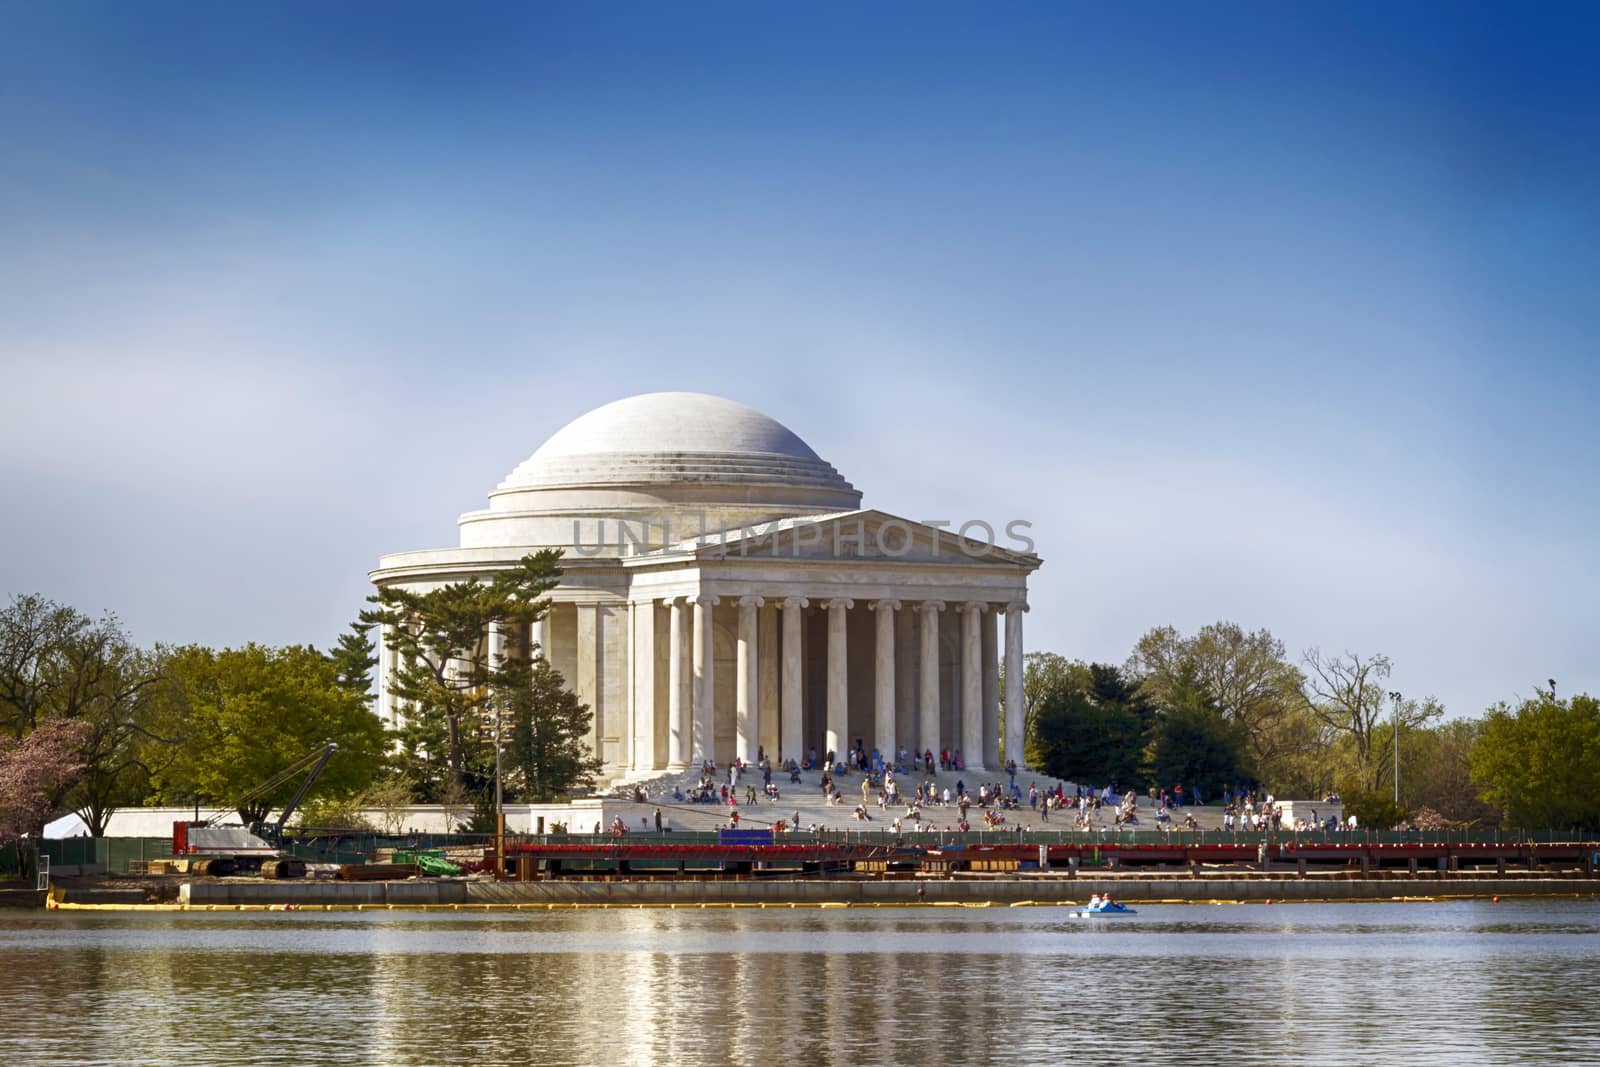 The Thomas Jefferson Memorial in Washington DC